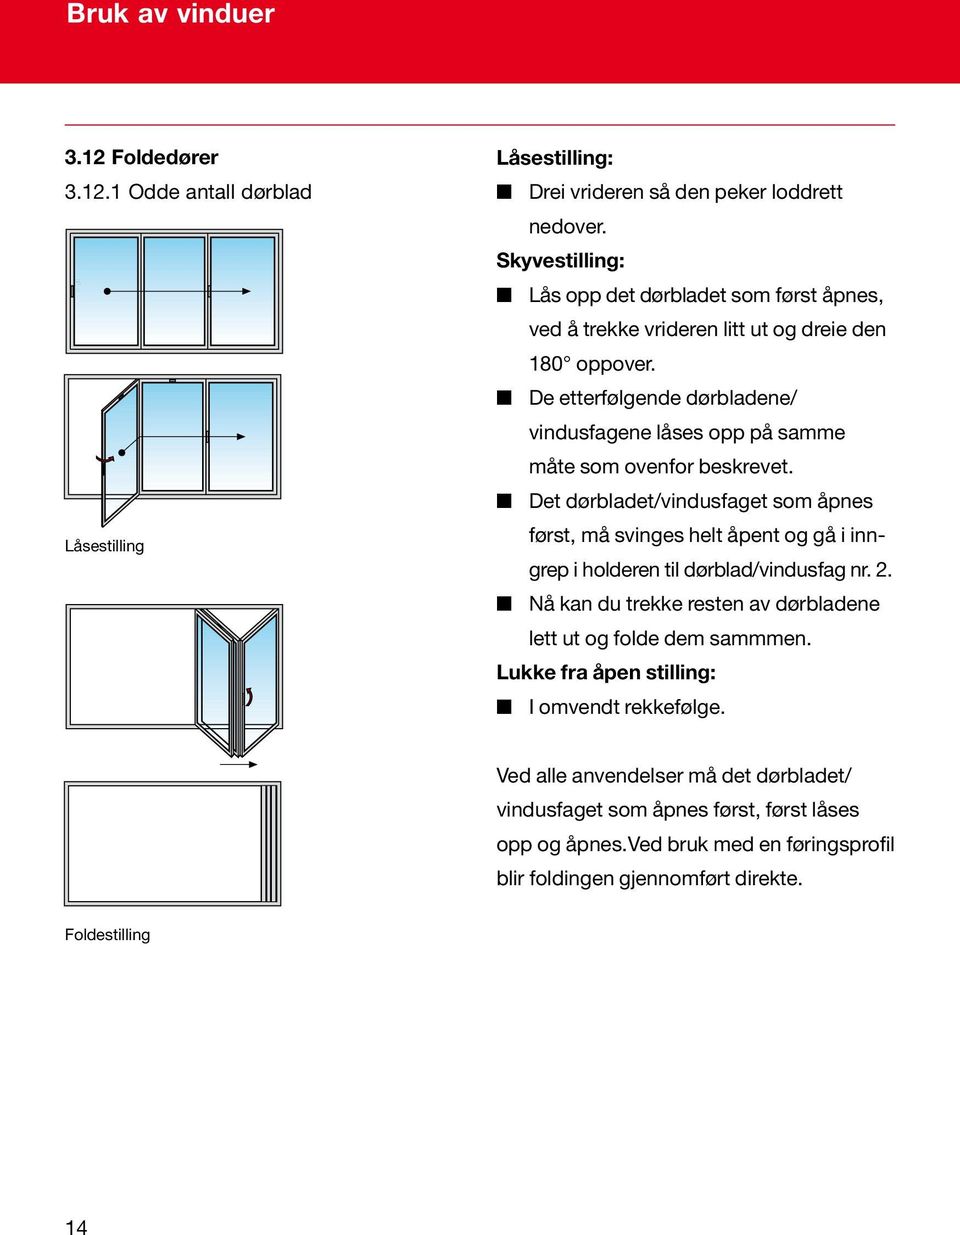 De etterfølgende dørbladene/ vindusfagene låses opp på samme måte som ovenfor beskrevet.